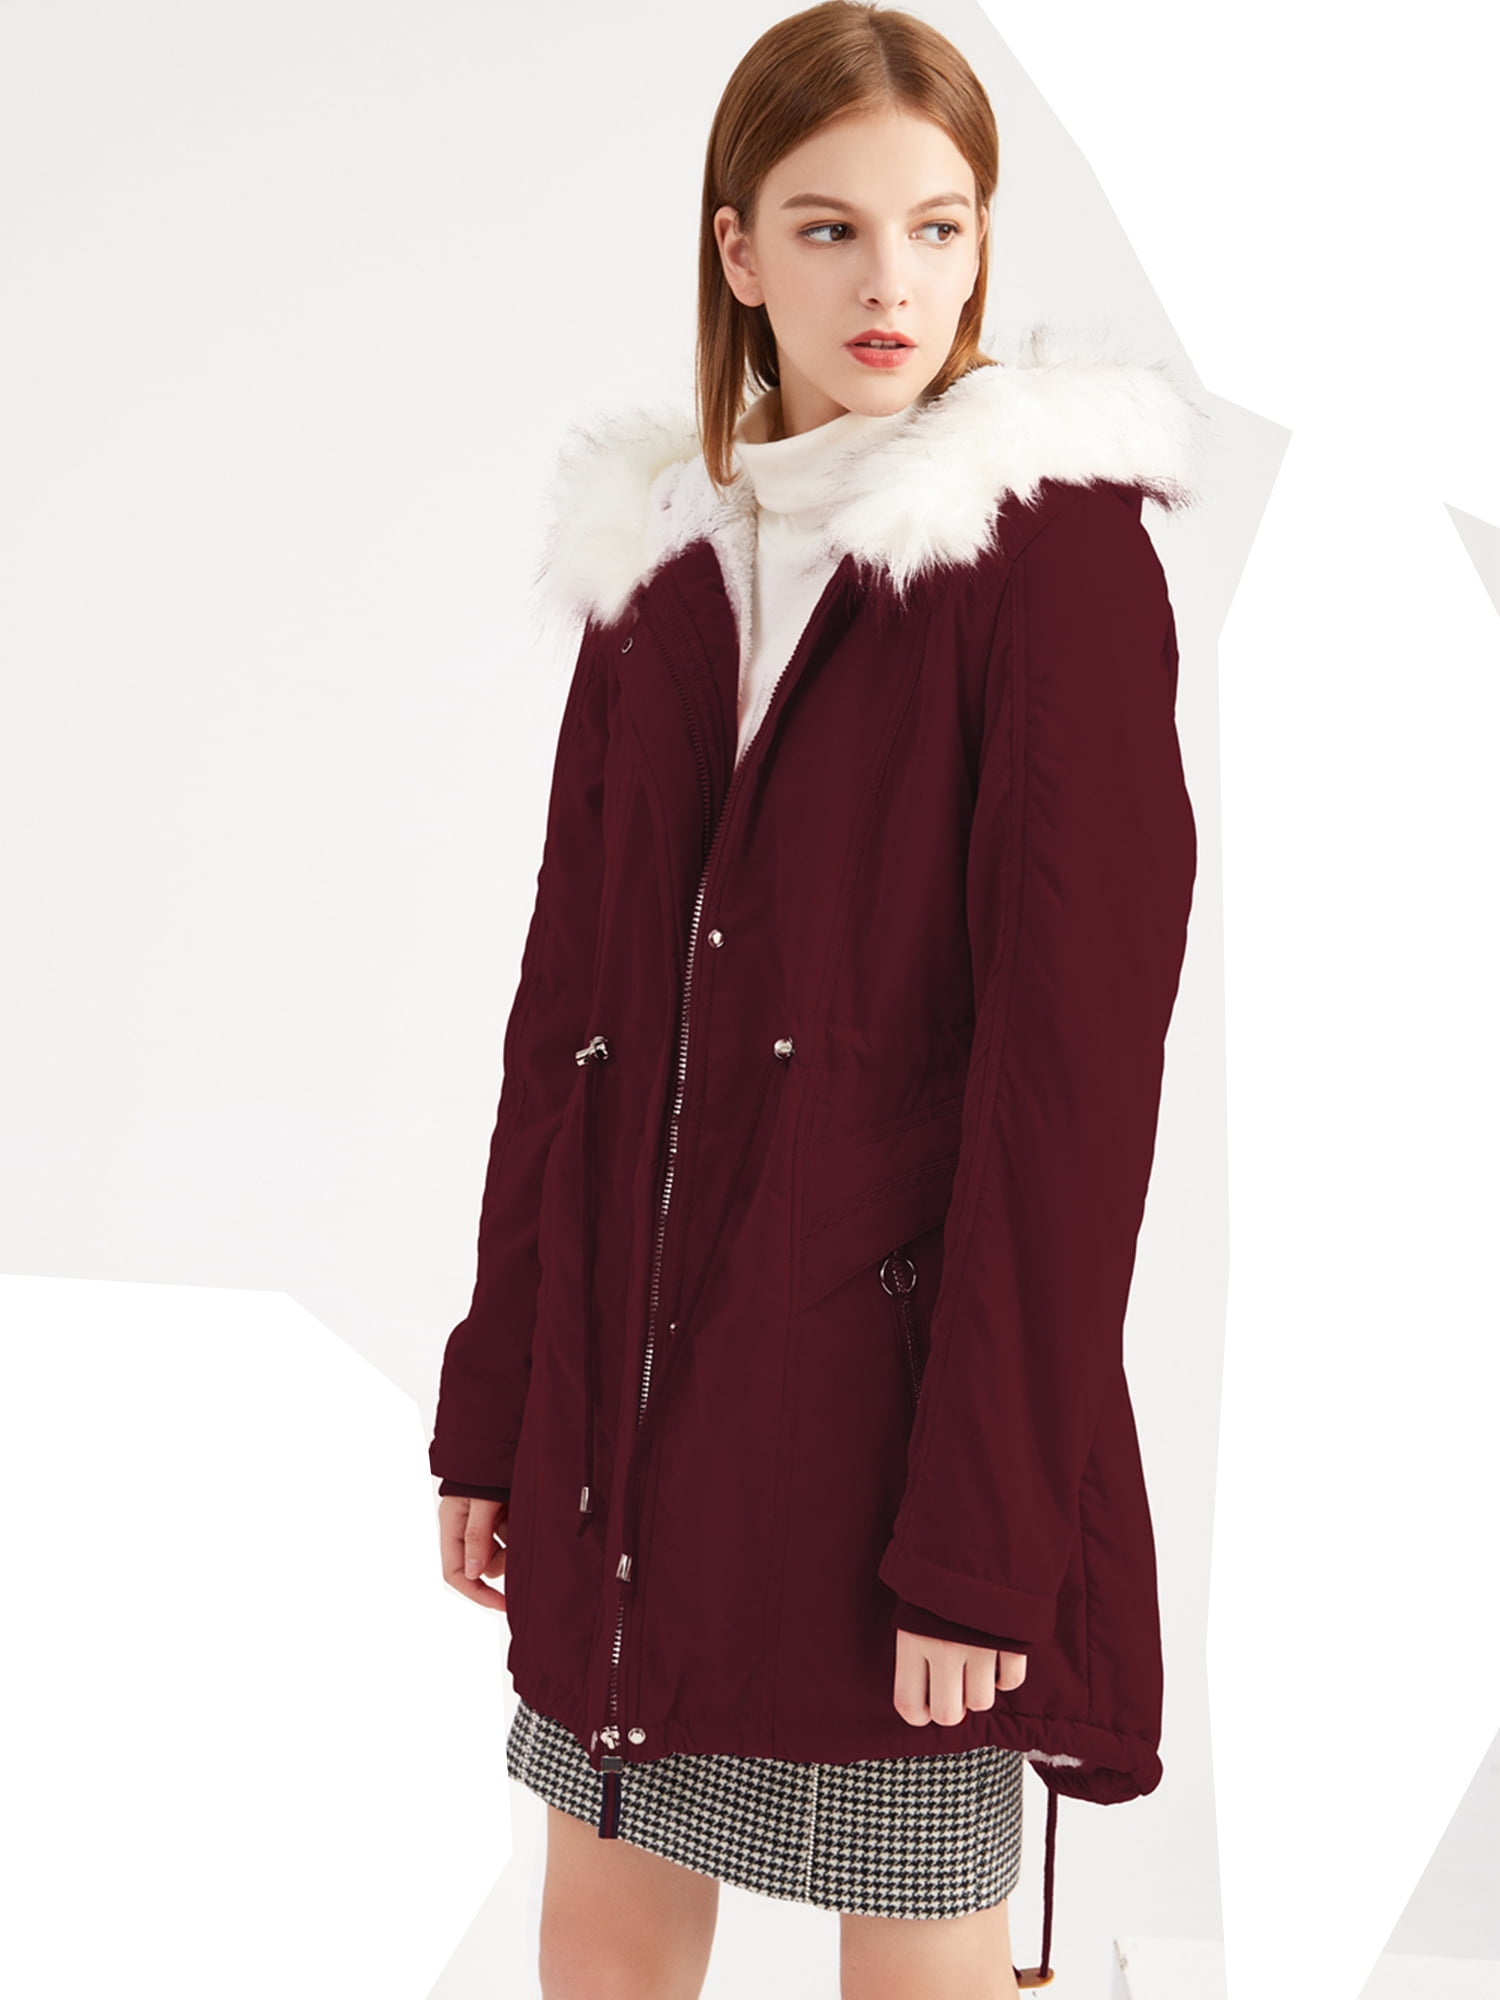 Fashion Women Winter Warm Collar Hooded Long Coat Jacket Trench Parka Outwear